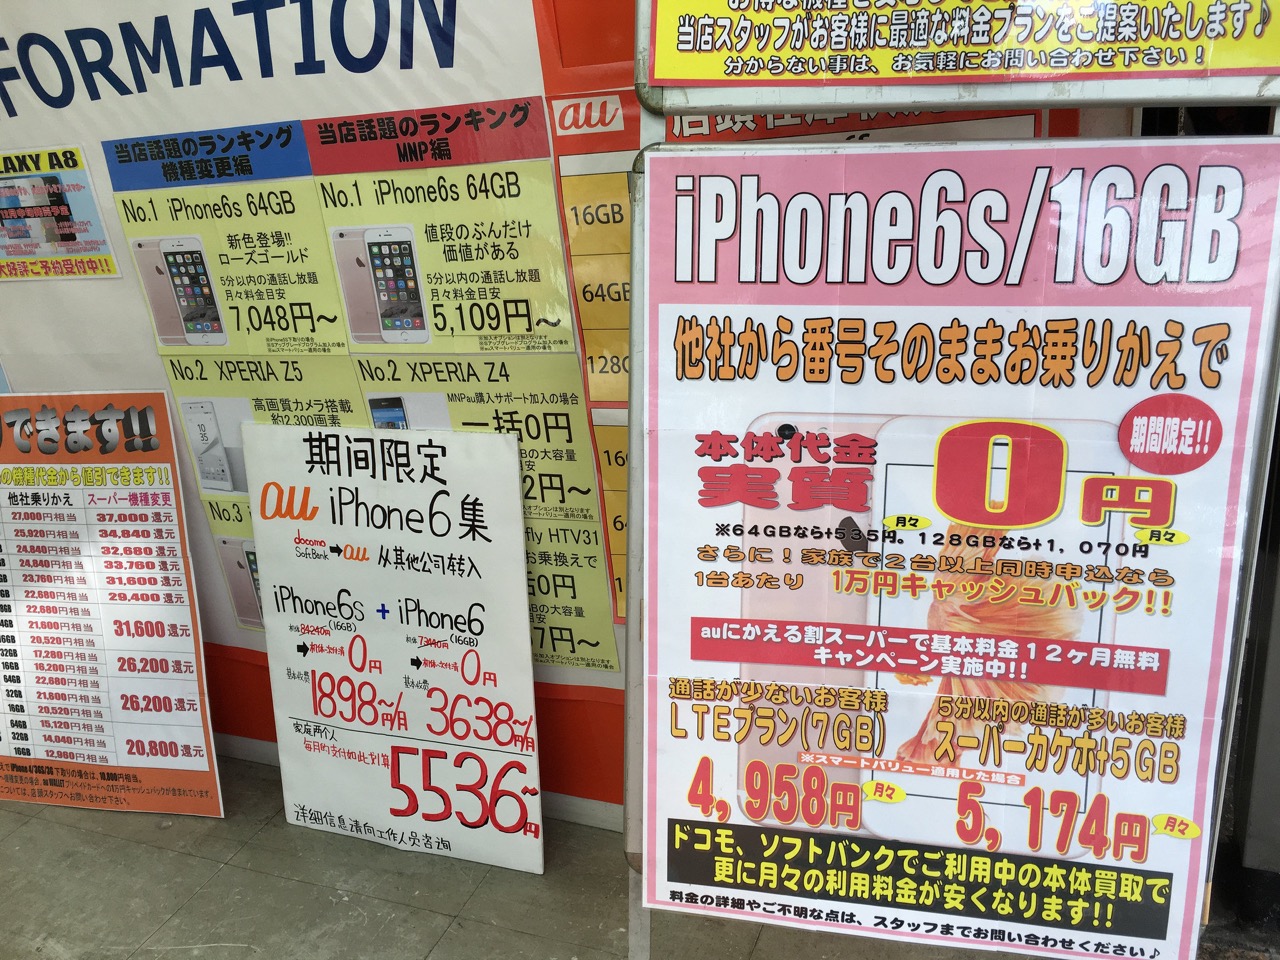 ドコモ「実質0円」廃止でiPhoneなど1万円〜2万円値上げか